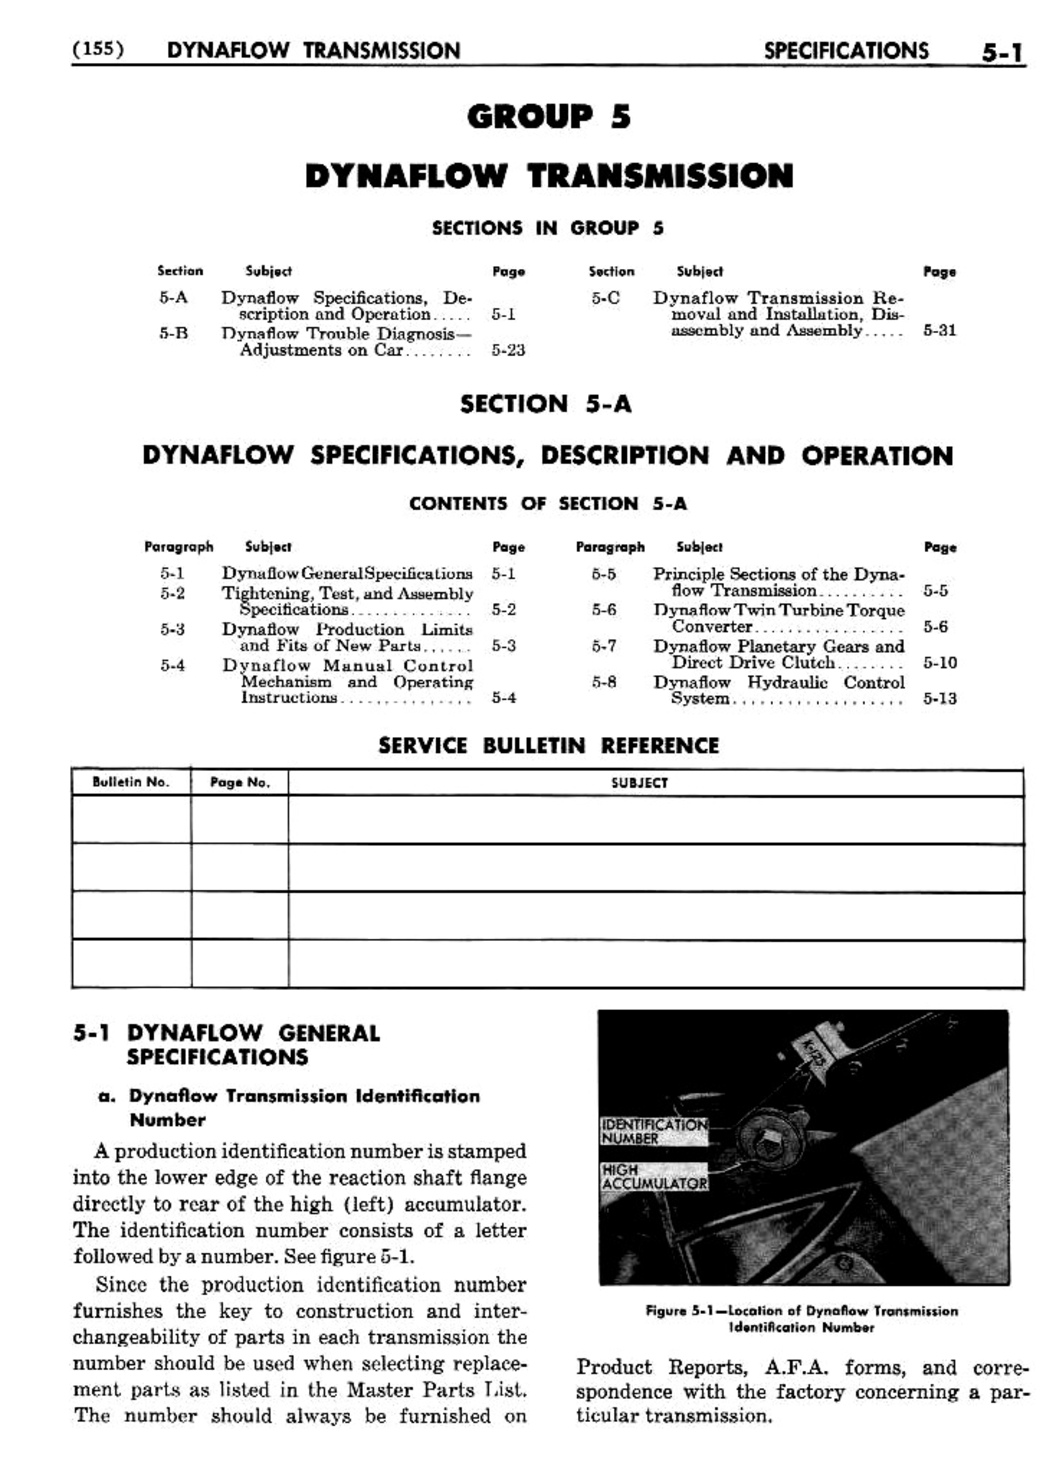 n_06 1954 Buick Shop Manual - Dynaflow-001-001.jpg